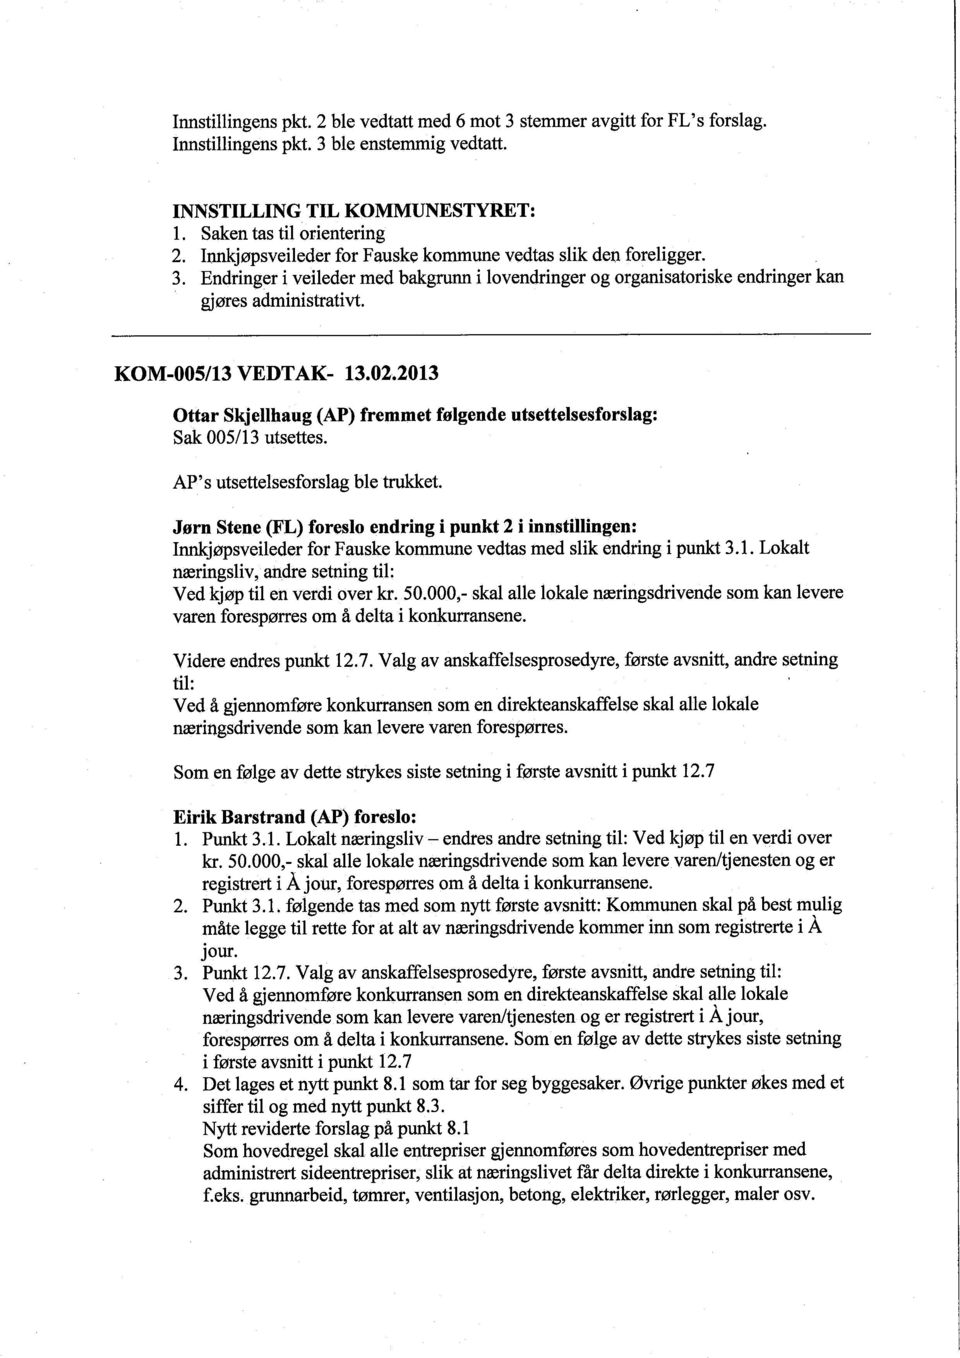 2013 Ottar SkjeUhaug (AP) fremmet følgende utsettelsesforslag: Sak 005/13 utsettes. AP's utsettelsesforslag ble truet.